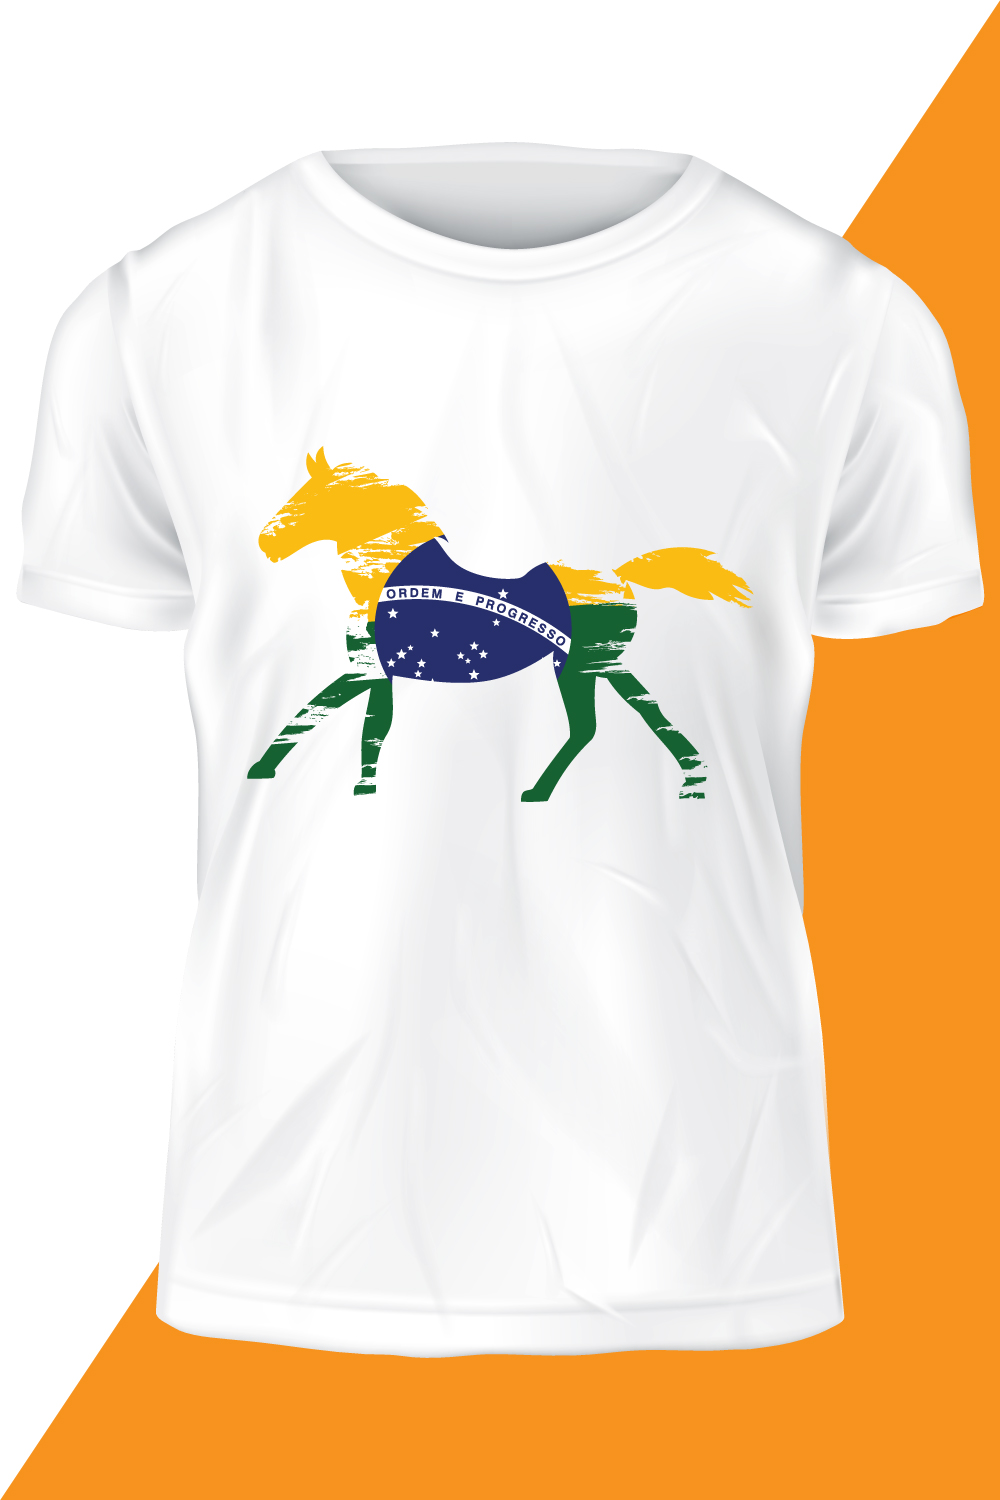 T-shirt Brazilian Flag Design pinterest image.